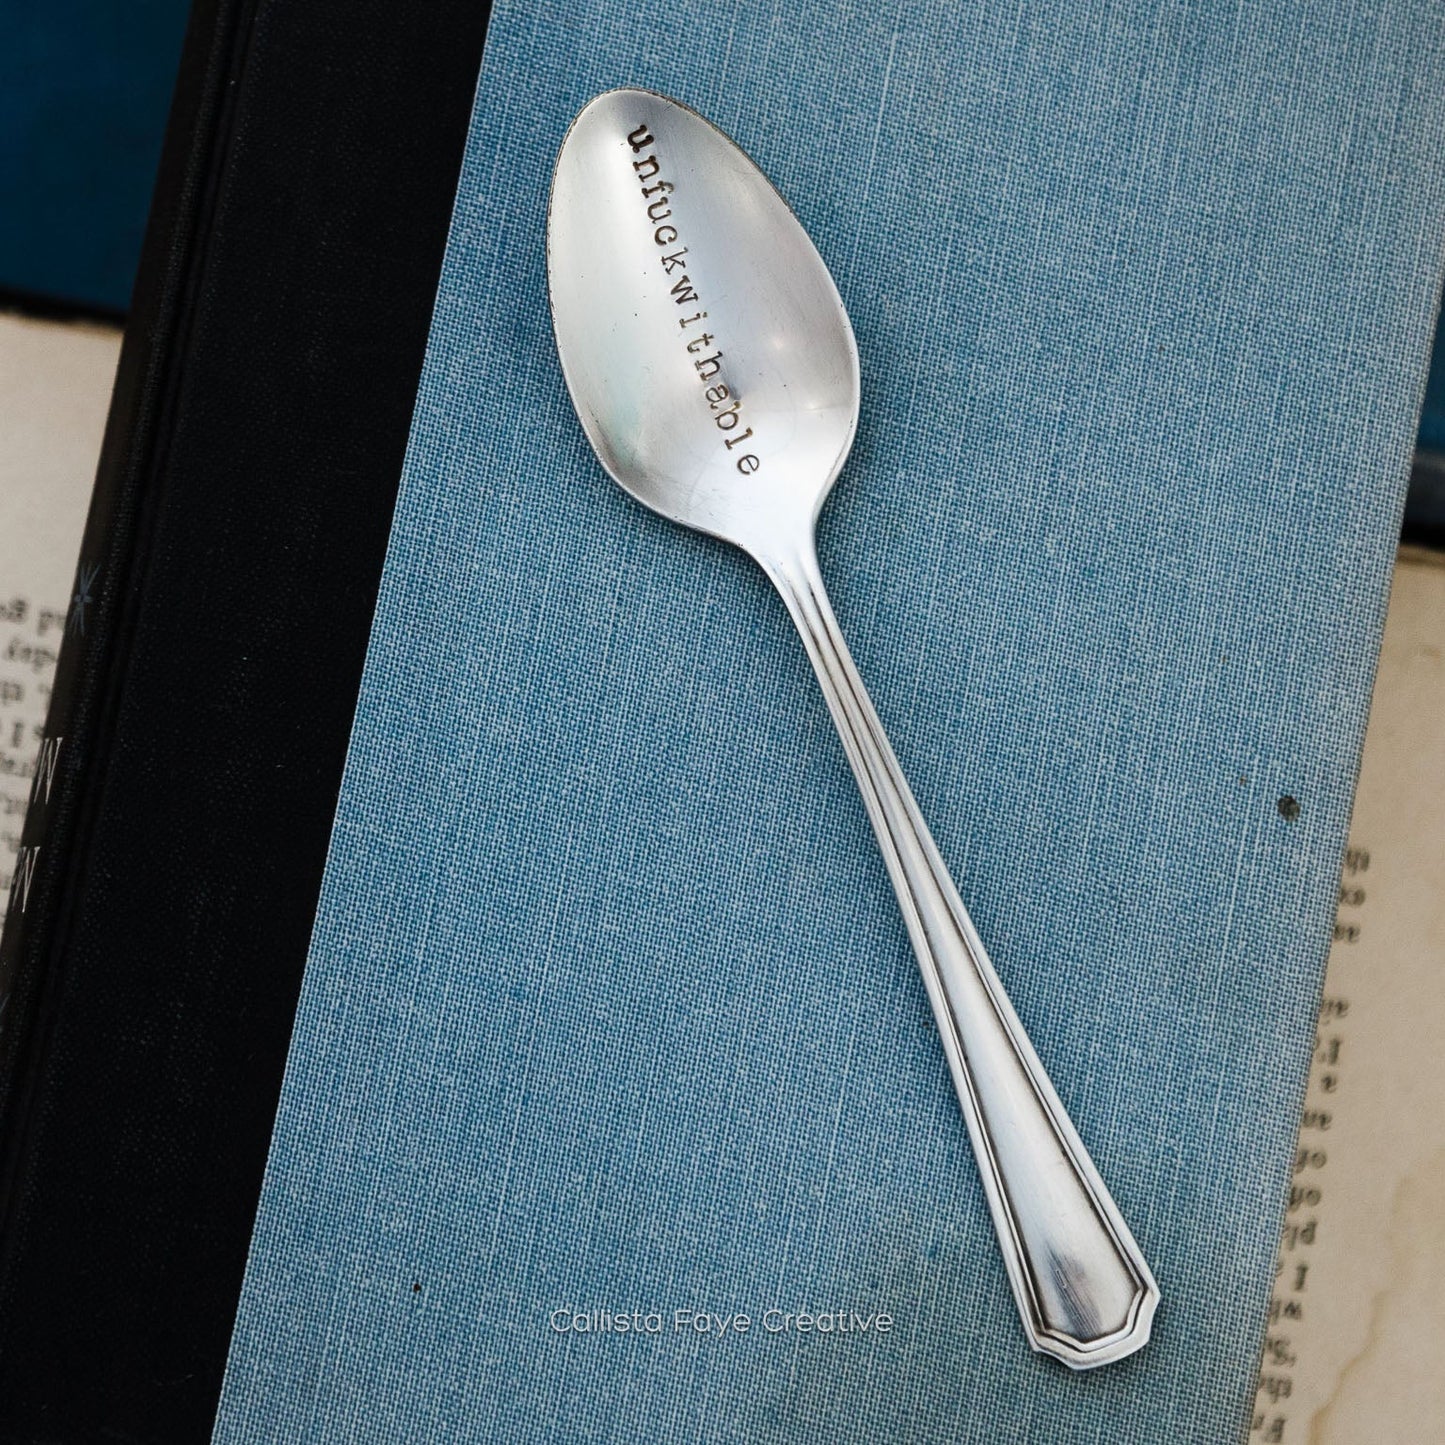 Unfuckwithable, Hand Stamped Vintage Spoon Spoons callistafaye   